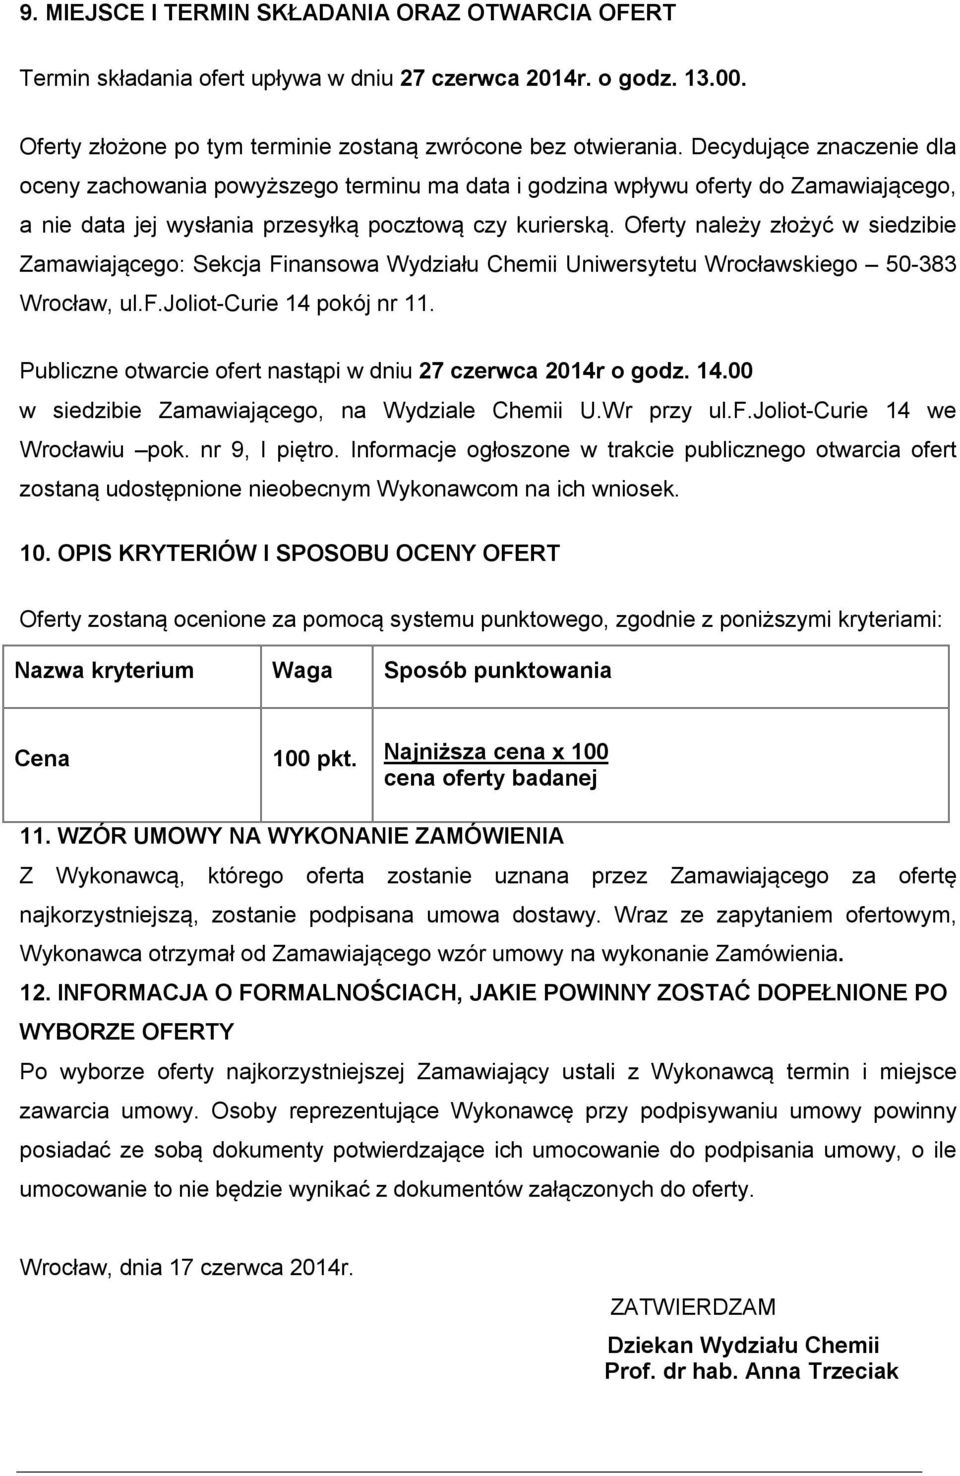 Oferty należy złożyć w siedzibie Zamawiającego: Sekcja Finansowa Wydziału Chemii Uniwersytetu Wrocławskiego 50-383 Wrocław, ul.f.joliot-curie 14 pokój nr 11.